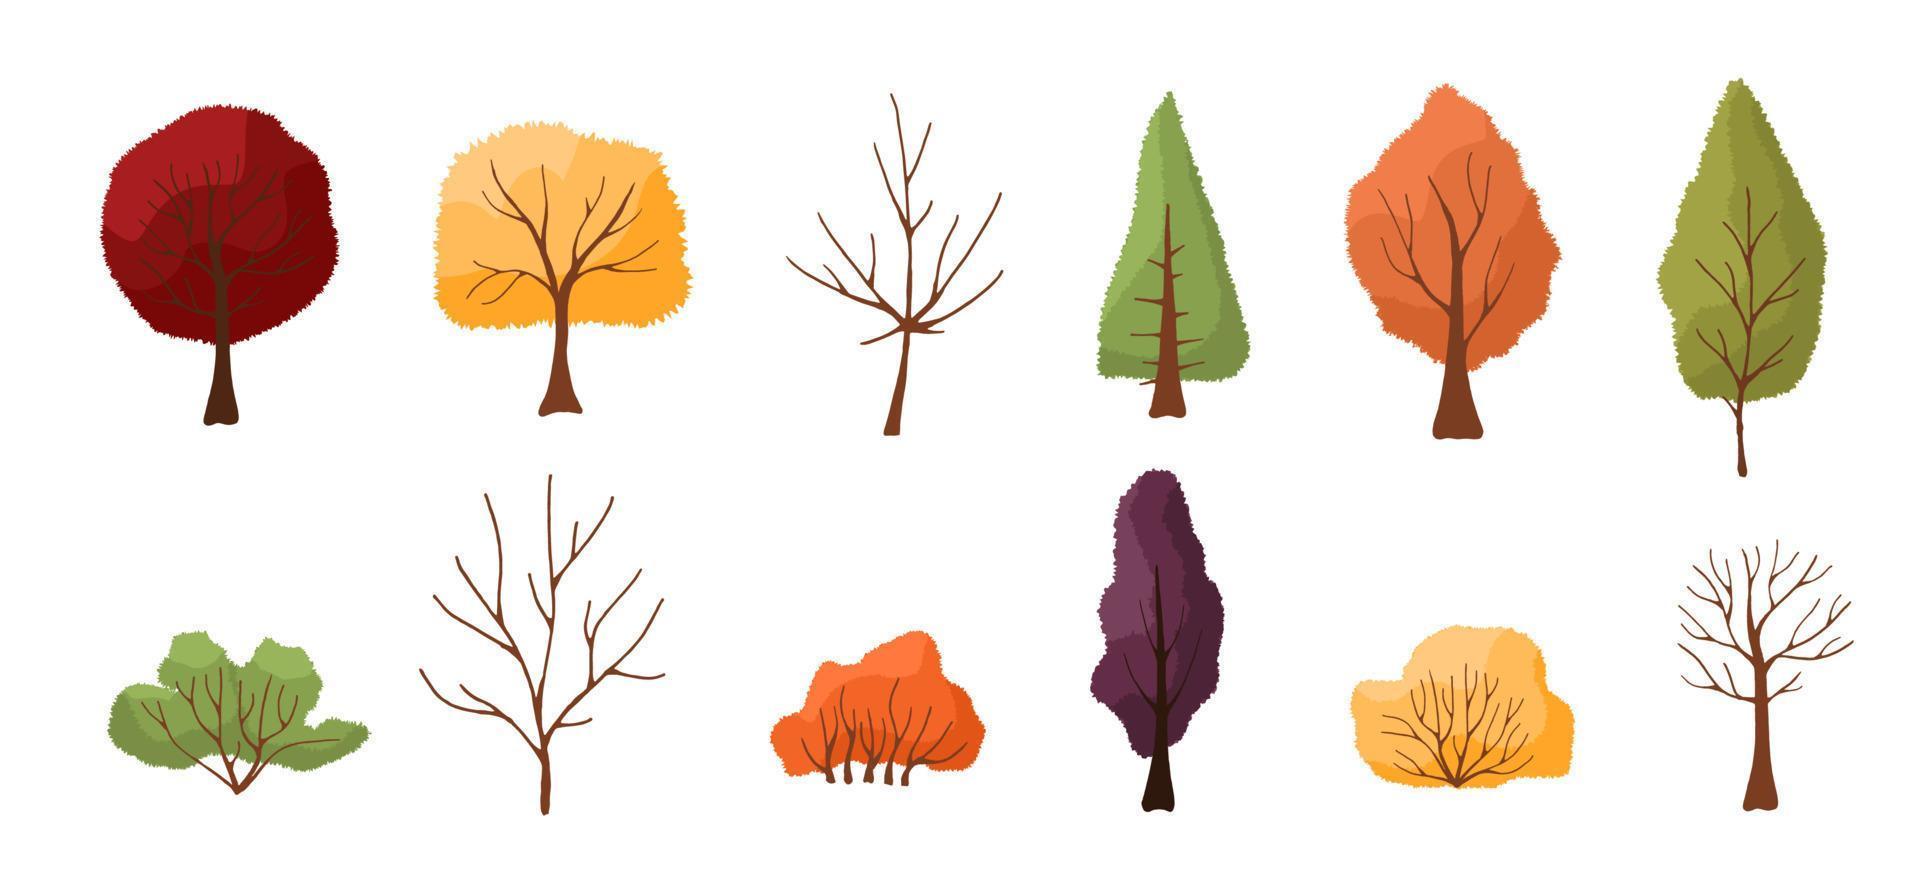 conjunto de coloridos árboles y arbustos de otoño. aislado sobre fondo blanco. diseño simple. ilustración vectorial en estilo plano. vector